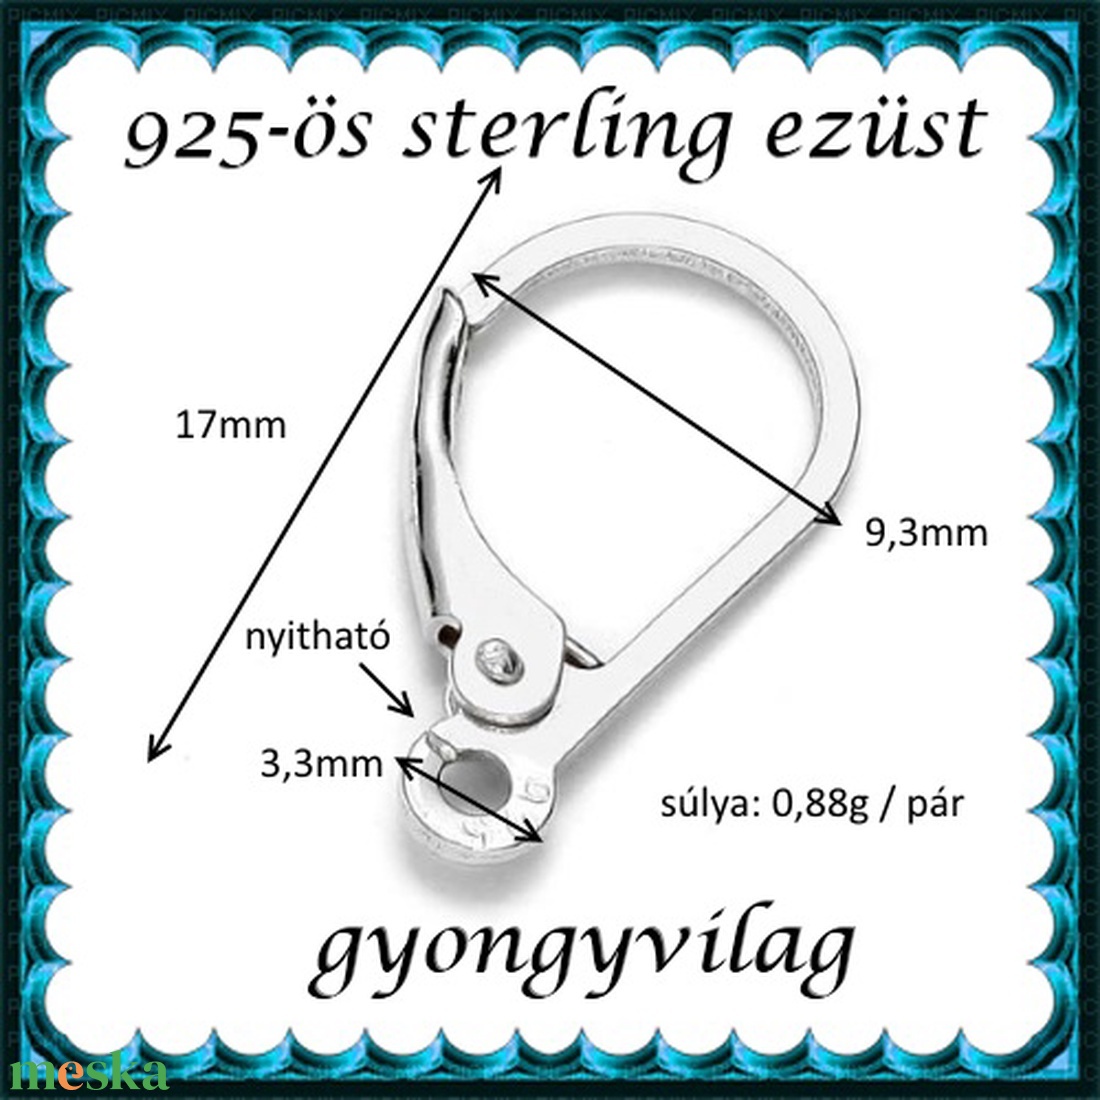  925-ös sterling ezüst ékszerkellék: fülbevalóalap biztonsági kapoccsal EFK K 23 - gyöngy, ékszerkellék - egyéb alkatrész - Meska.hu